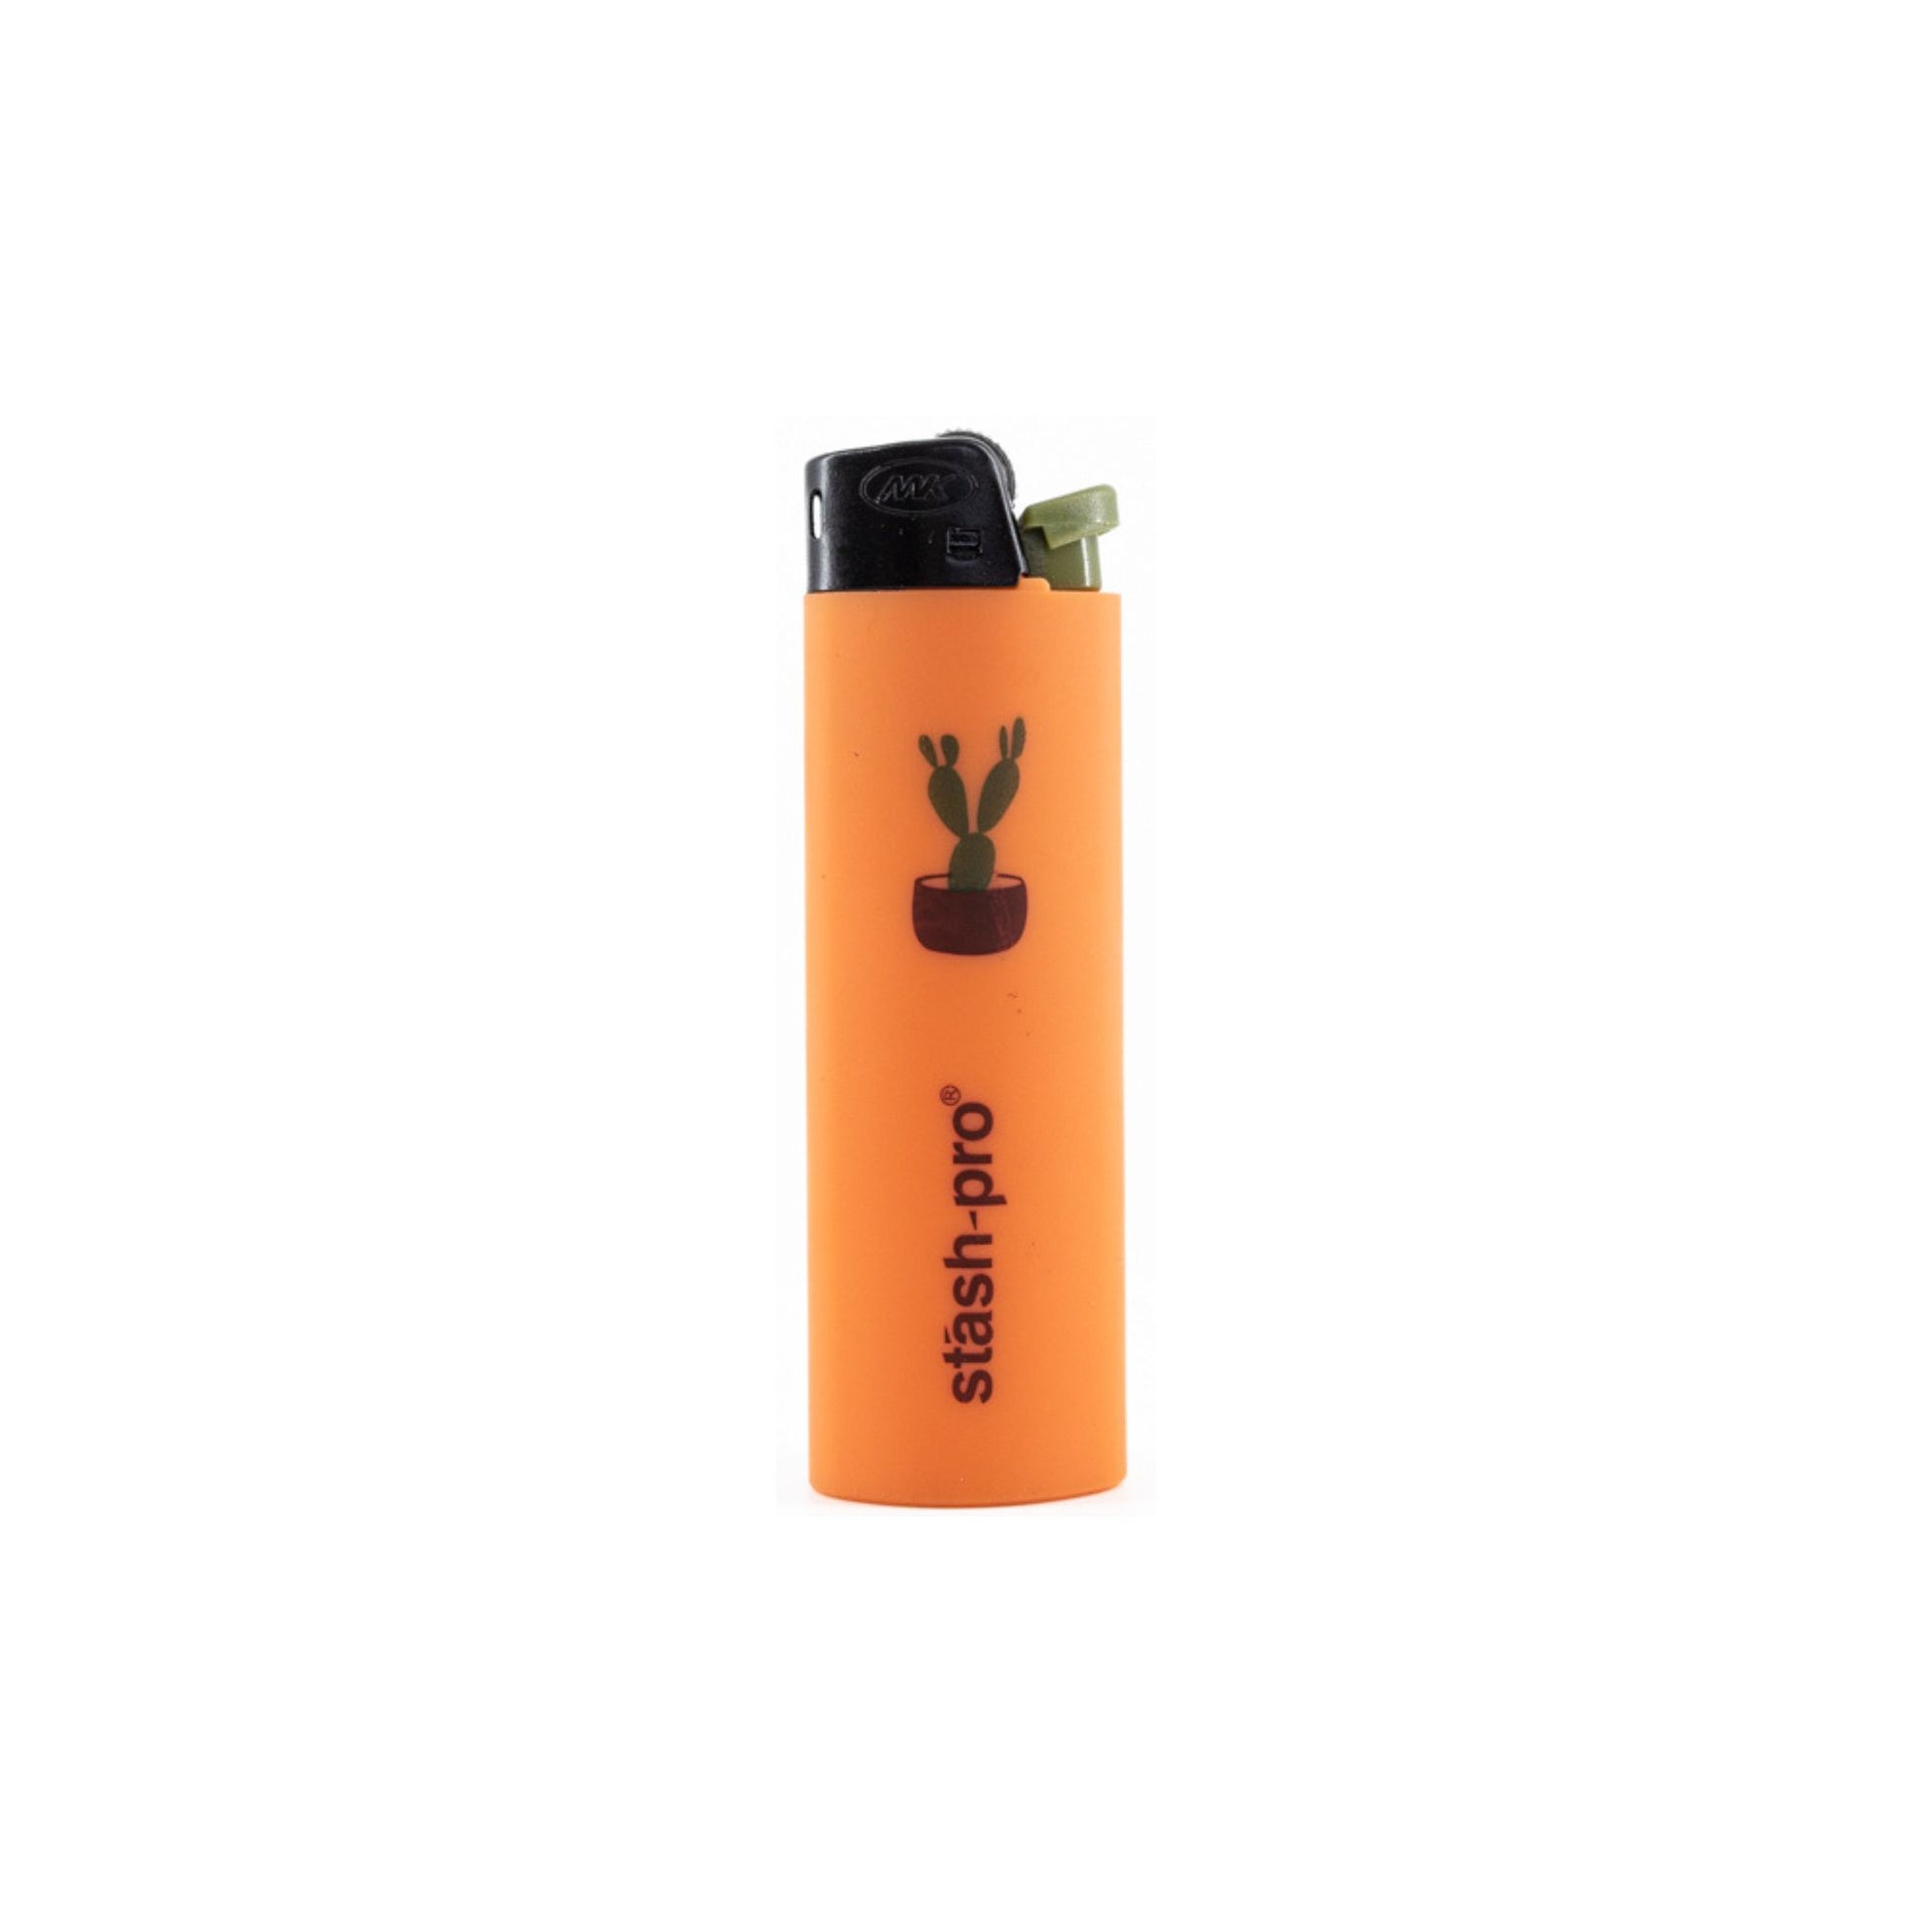 Stash-Pro Pocket Lighter ZY13ES1 Orange